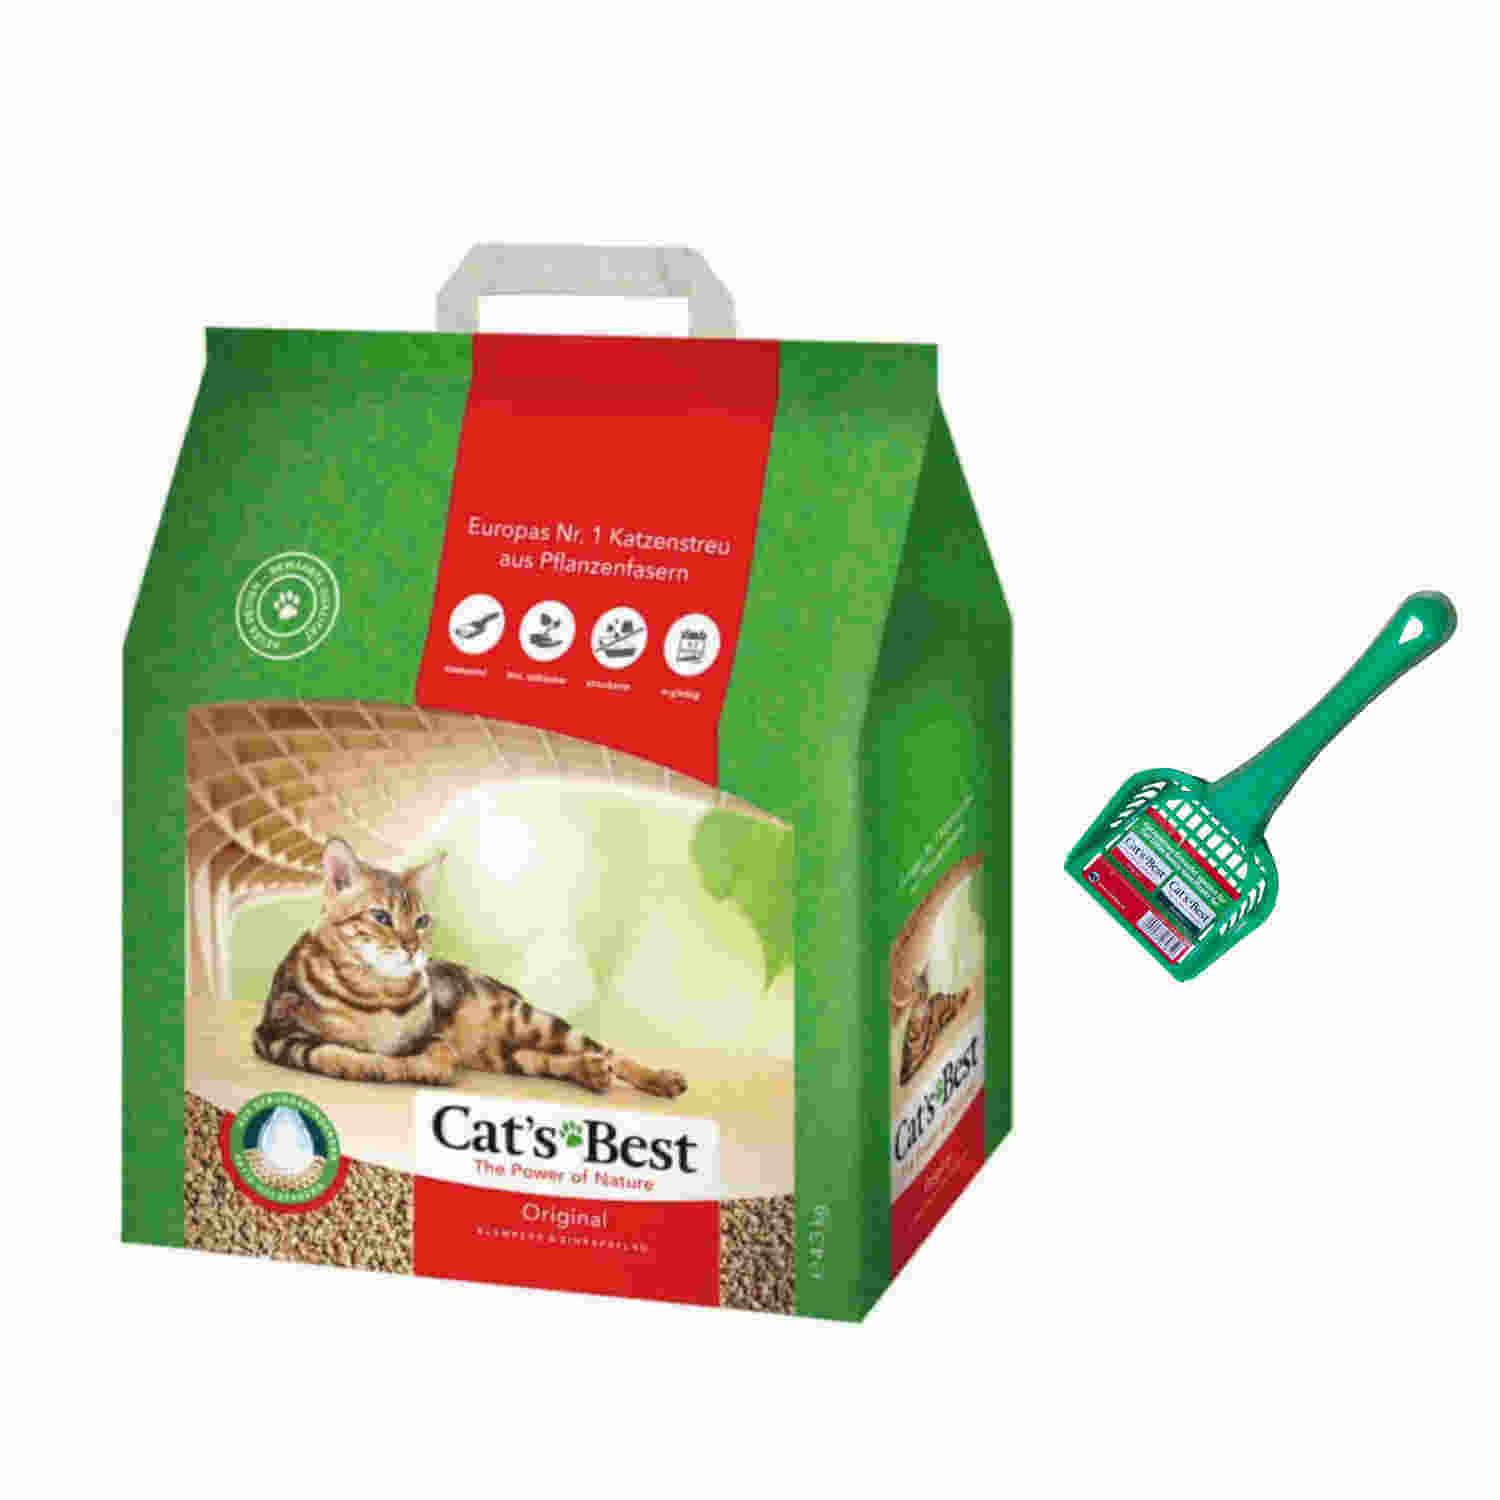 Buy Cats Best Original Cat Litter 4.3 Kg Online in India ...